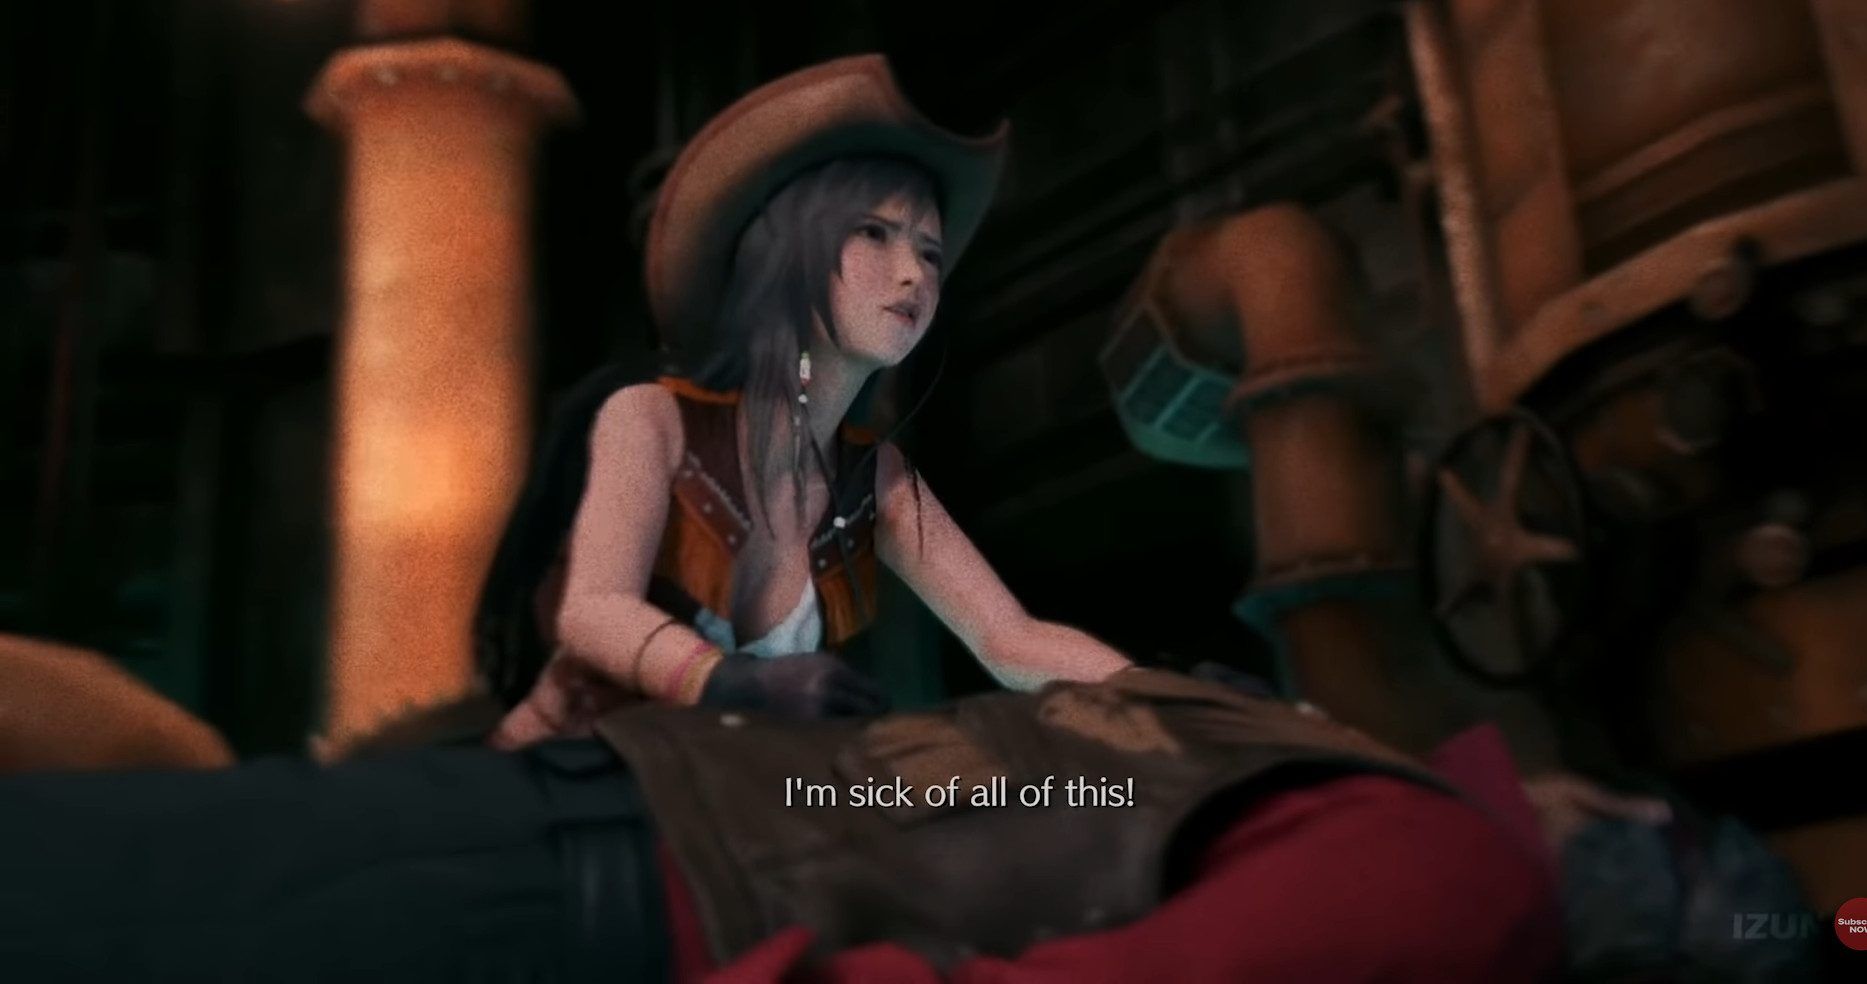 Final Fantasy VII Remake Tifas Cowboy Hat Flashback Explained